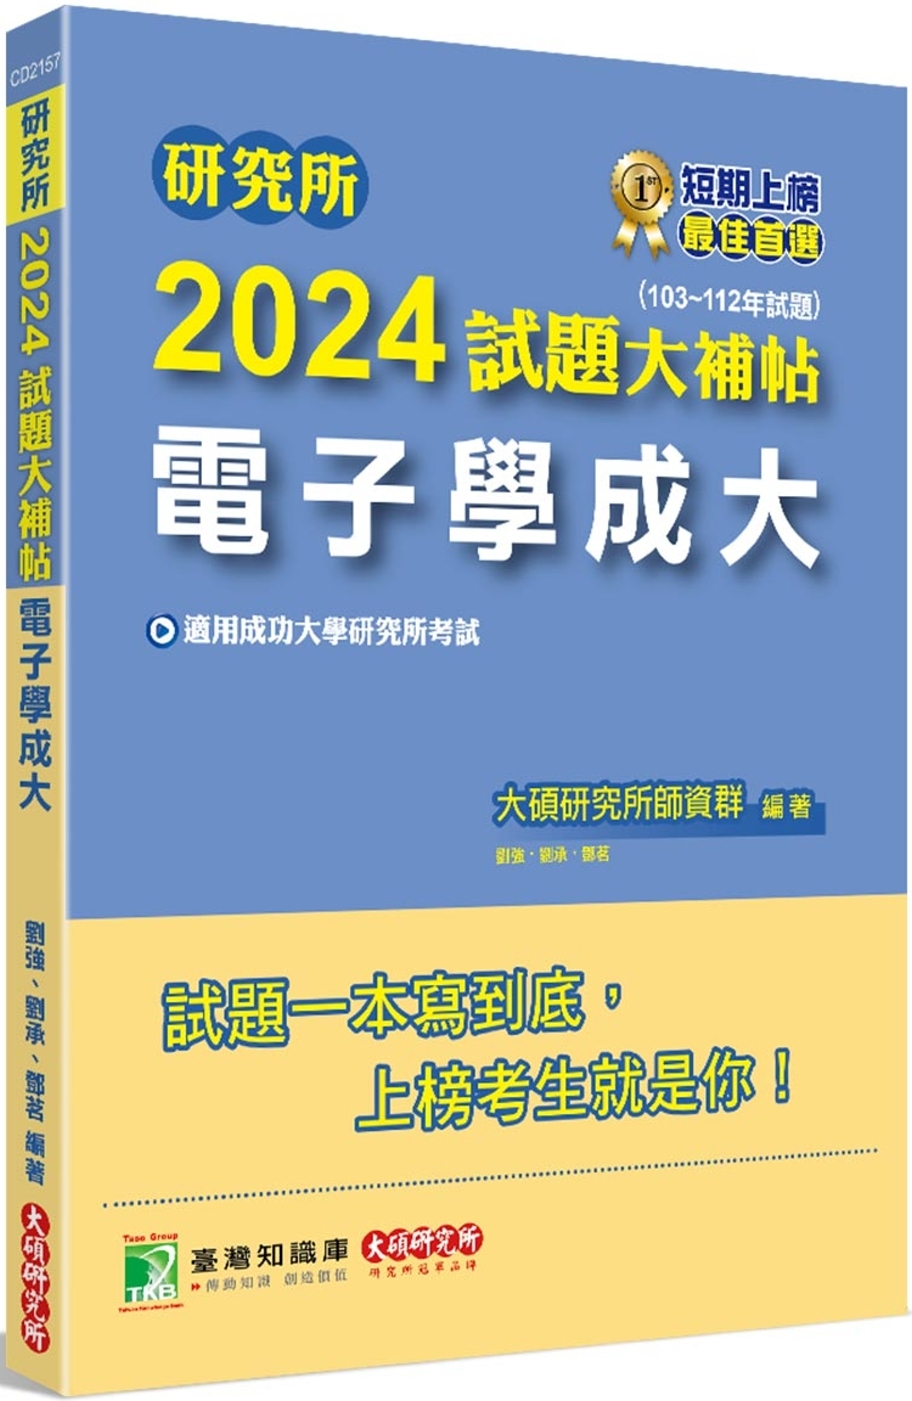 研究所2024試題大補帖【電子學成大】(103~112年試題...